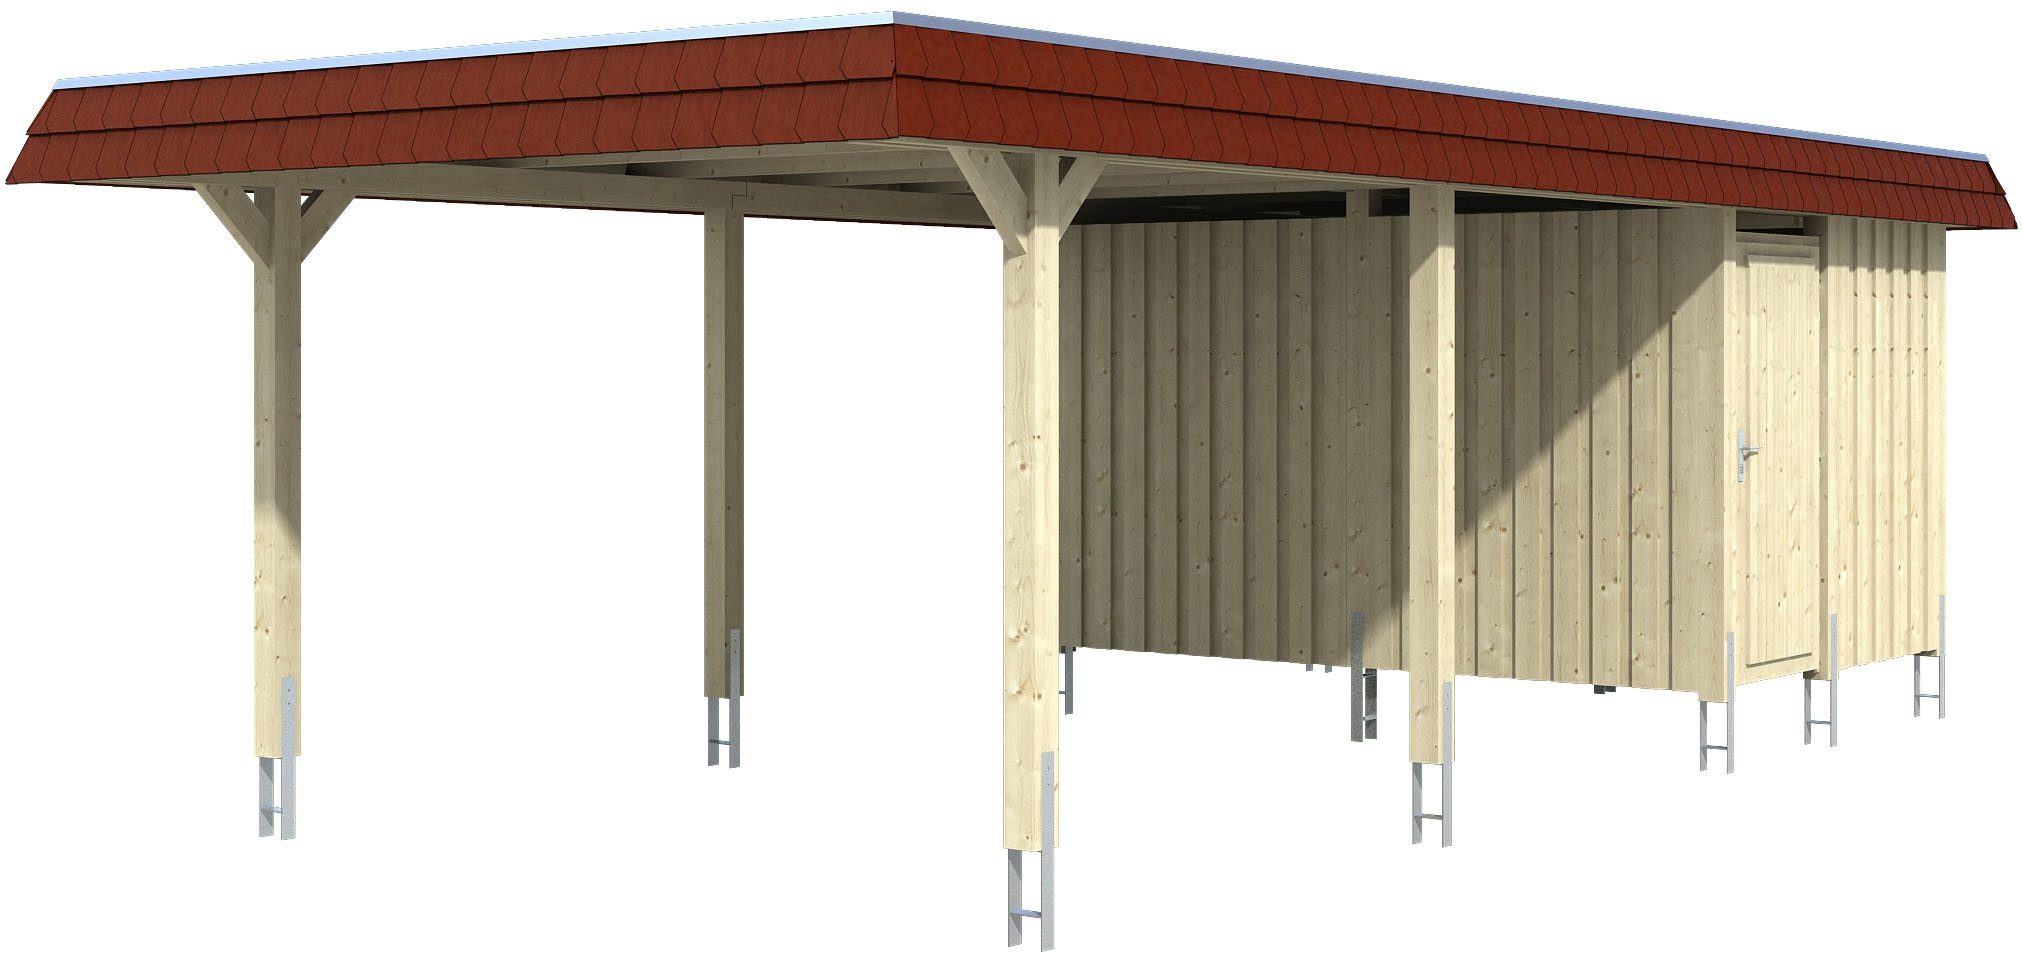 Skanholz Einzelcarport Wendland, BxT: 409x870 cm, 210 cm Einfahrtshöhe, mit Abstellraum mit Aluminiumdach, rote Blende